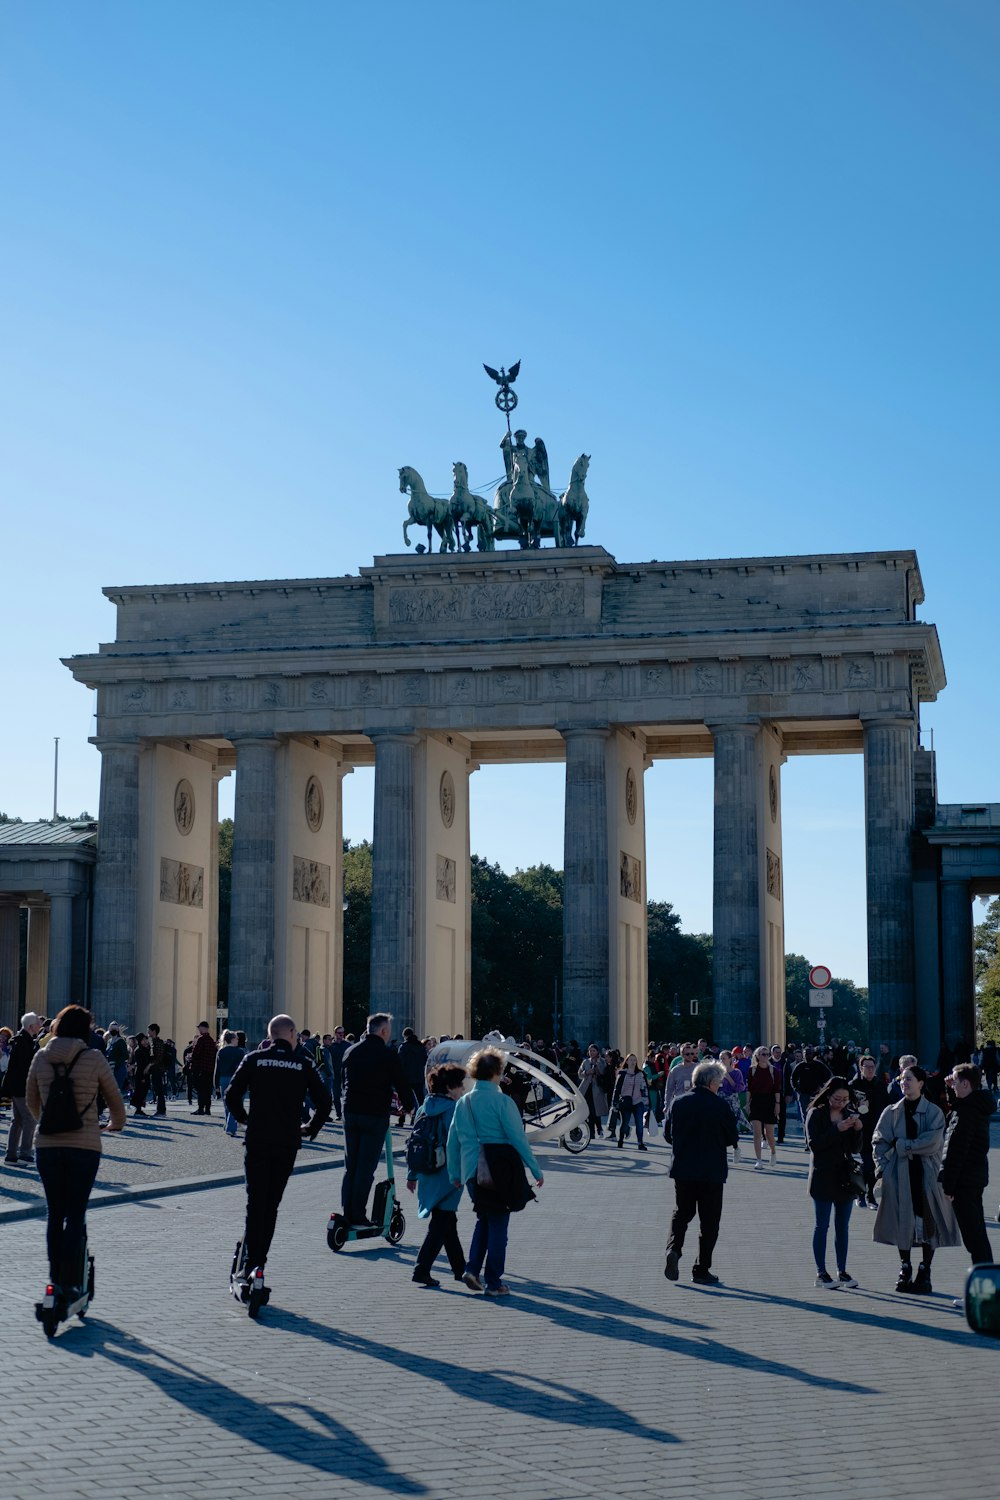 eine große Gruppe von Menschen, die vor dem Brandenburger Tor mit Säulen und einer Statue auf der Spitze spazieren gehen